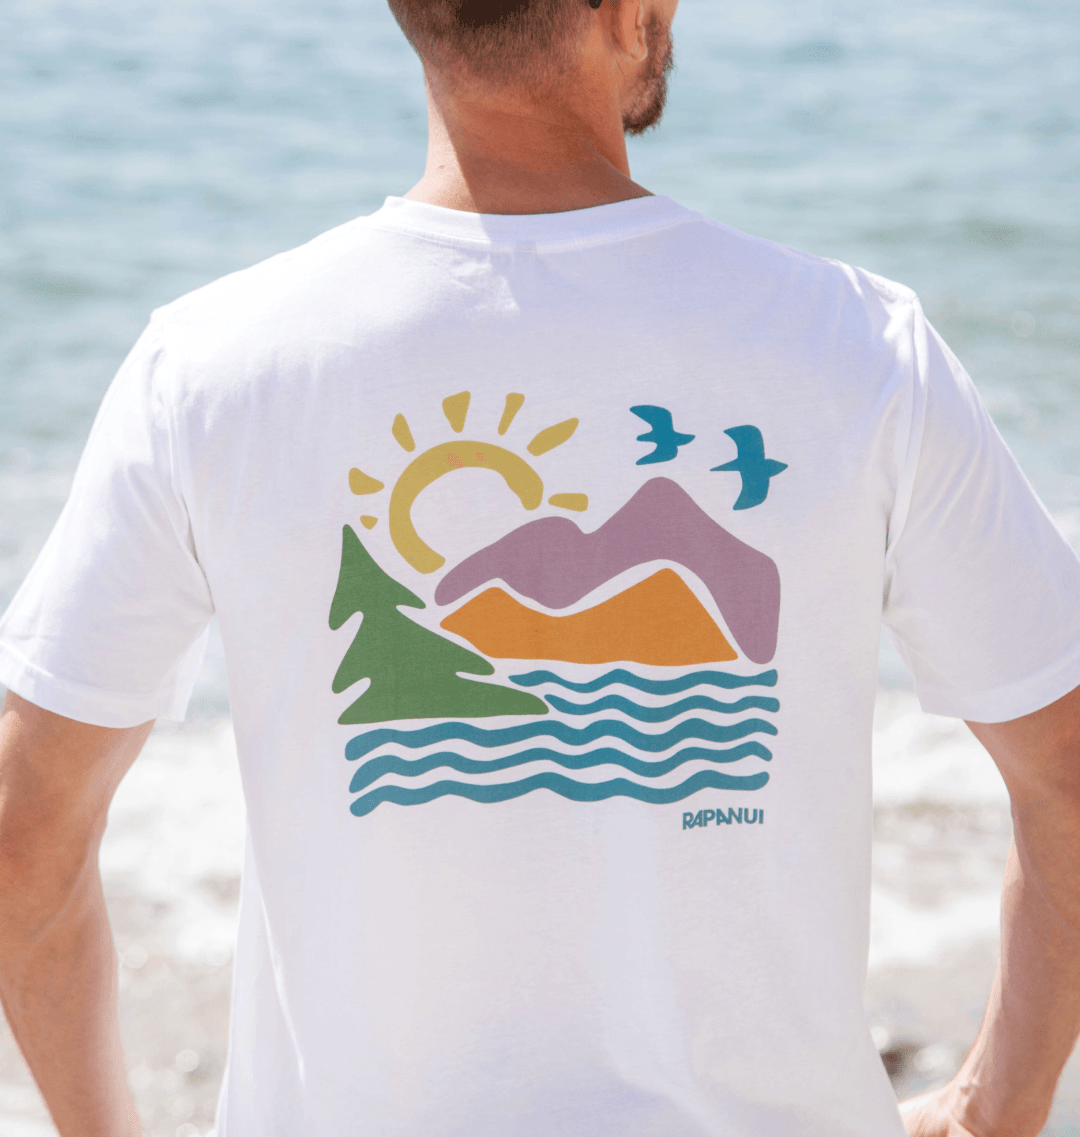 Wild Lakes T - Shirts - Printed T - shirt